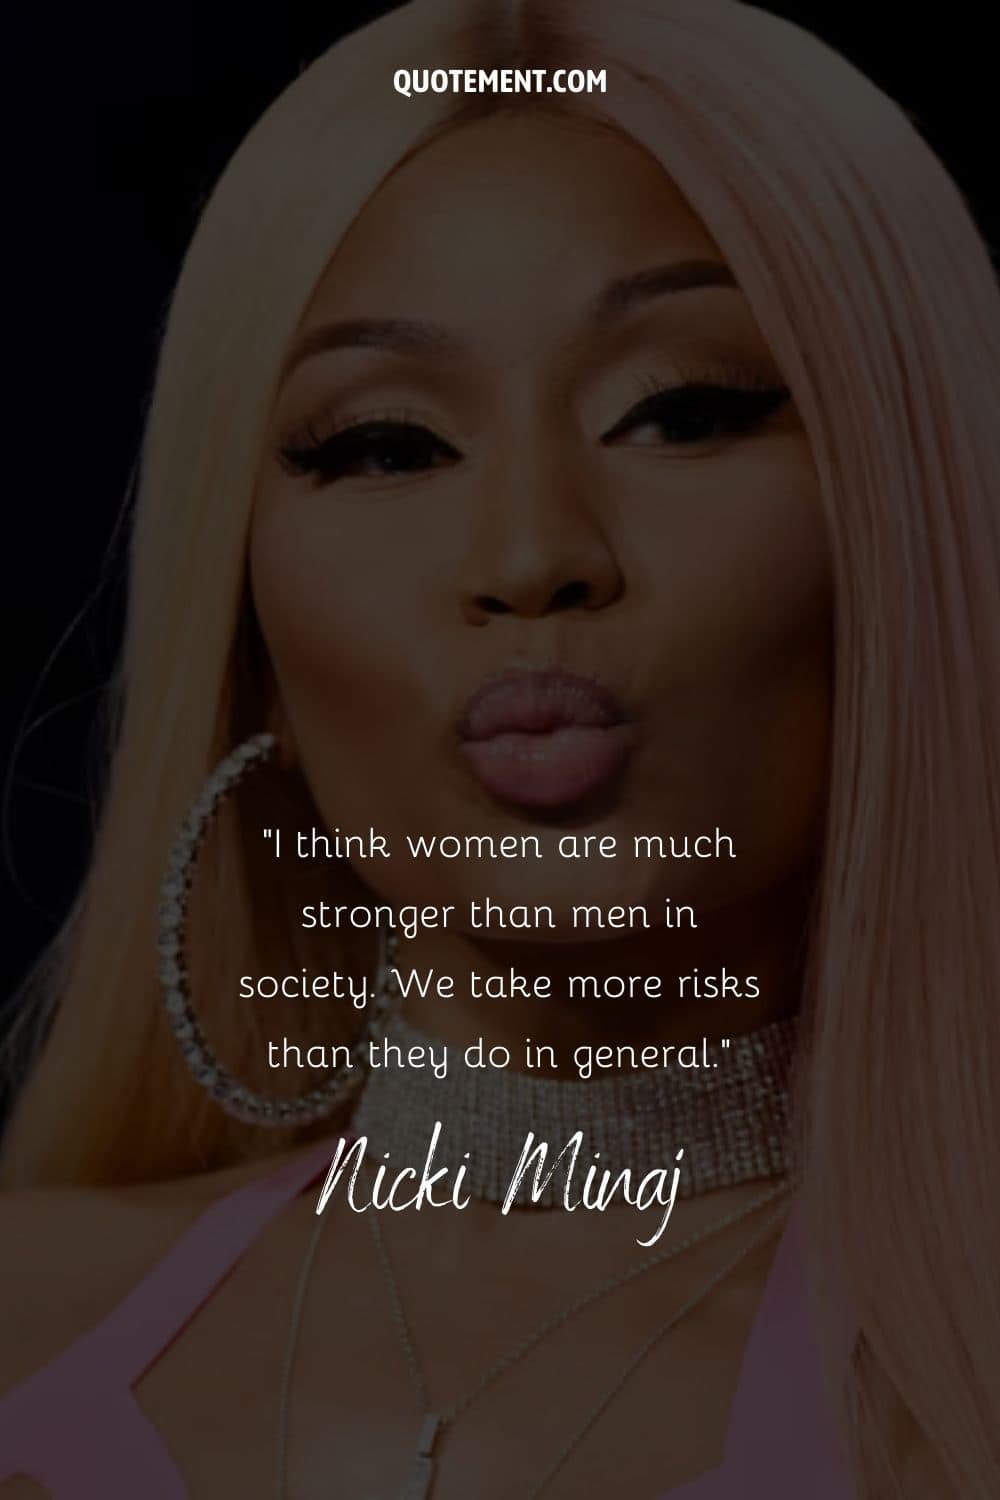 Cita de Nicki Minaj sobre las mujeres y su fuerza y su retrato de fondo